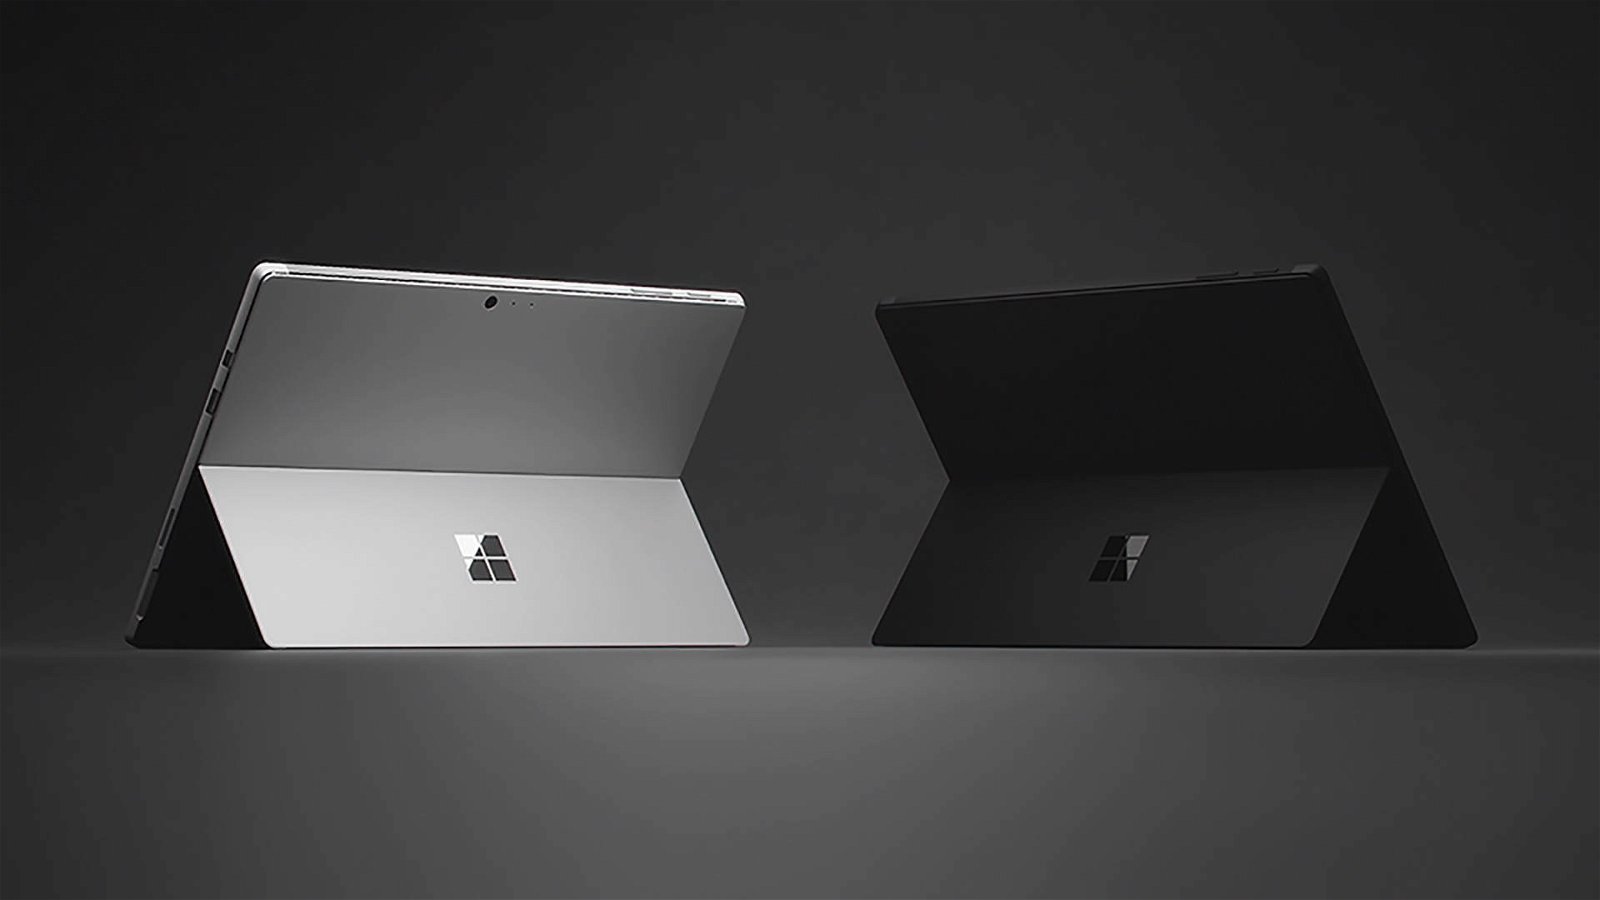 Immagine di Microsoft Surface Pro 6 scontato fino al 35%, arrivano i Surface Days